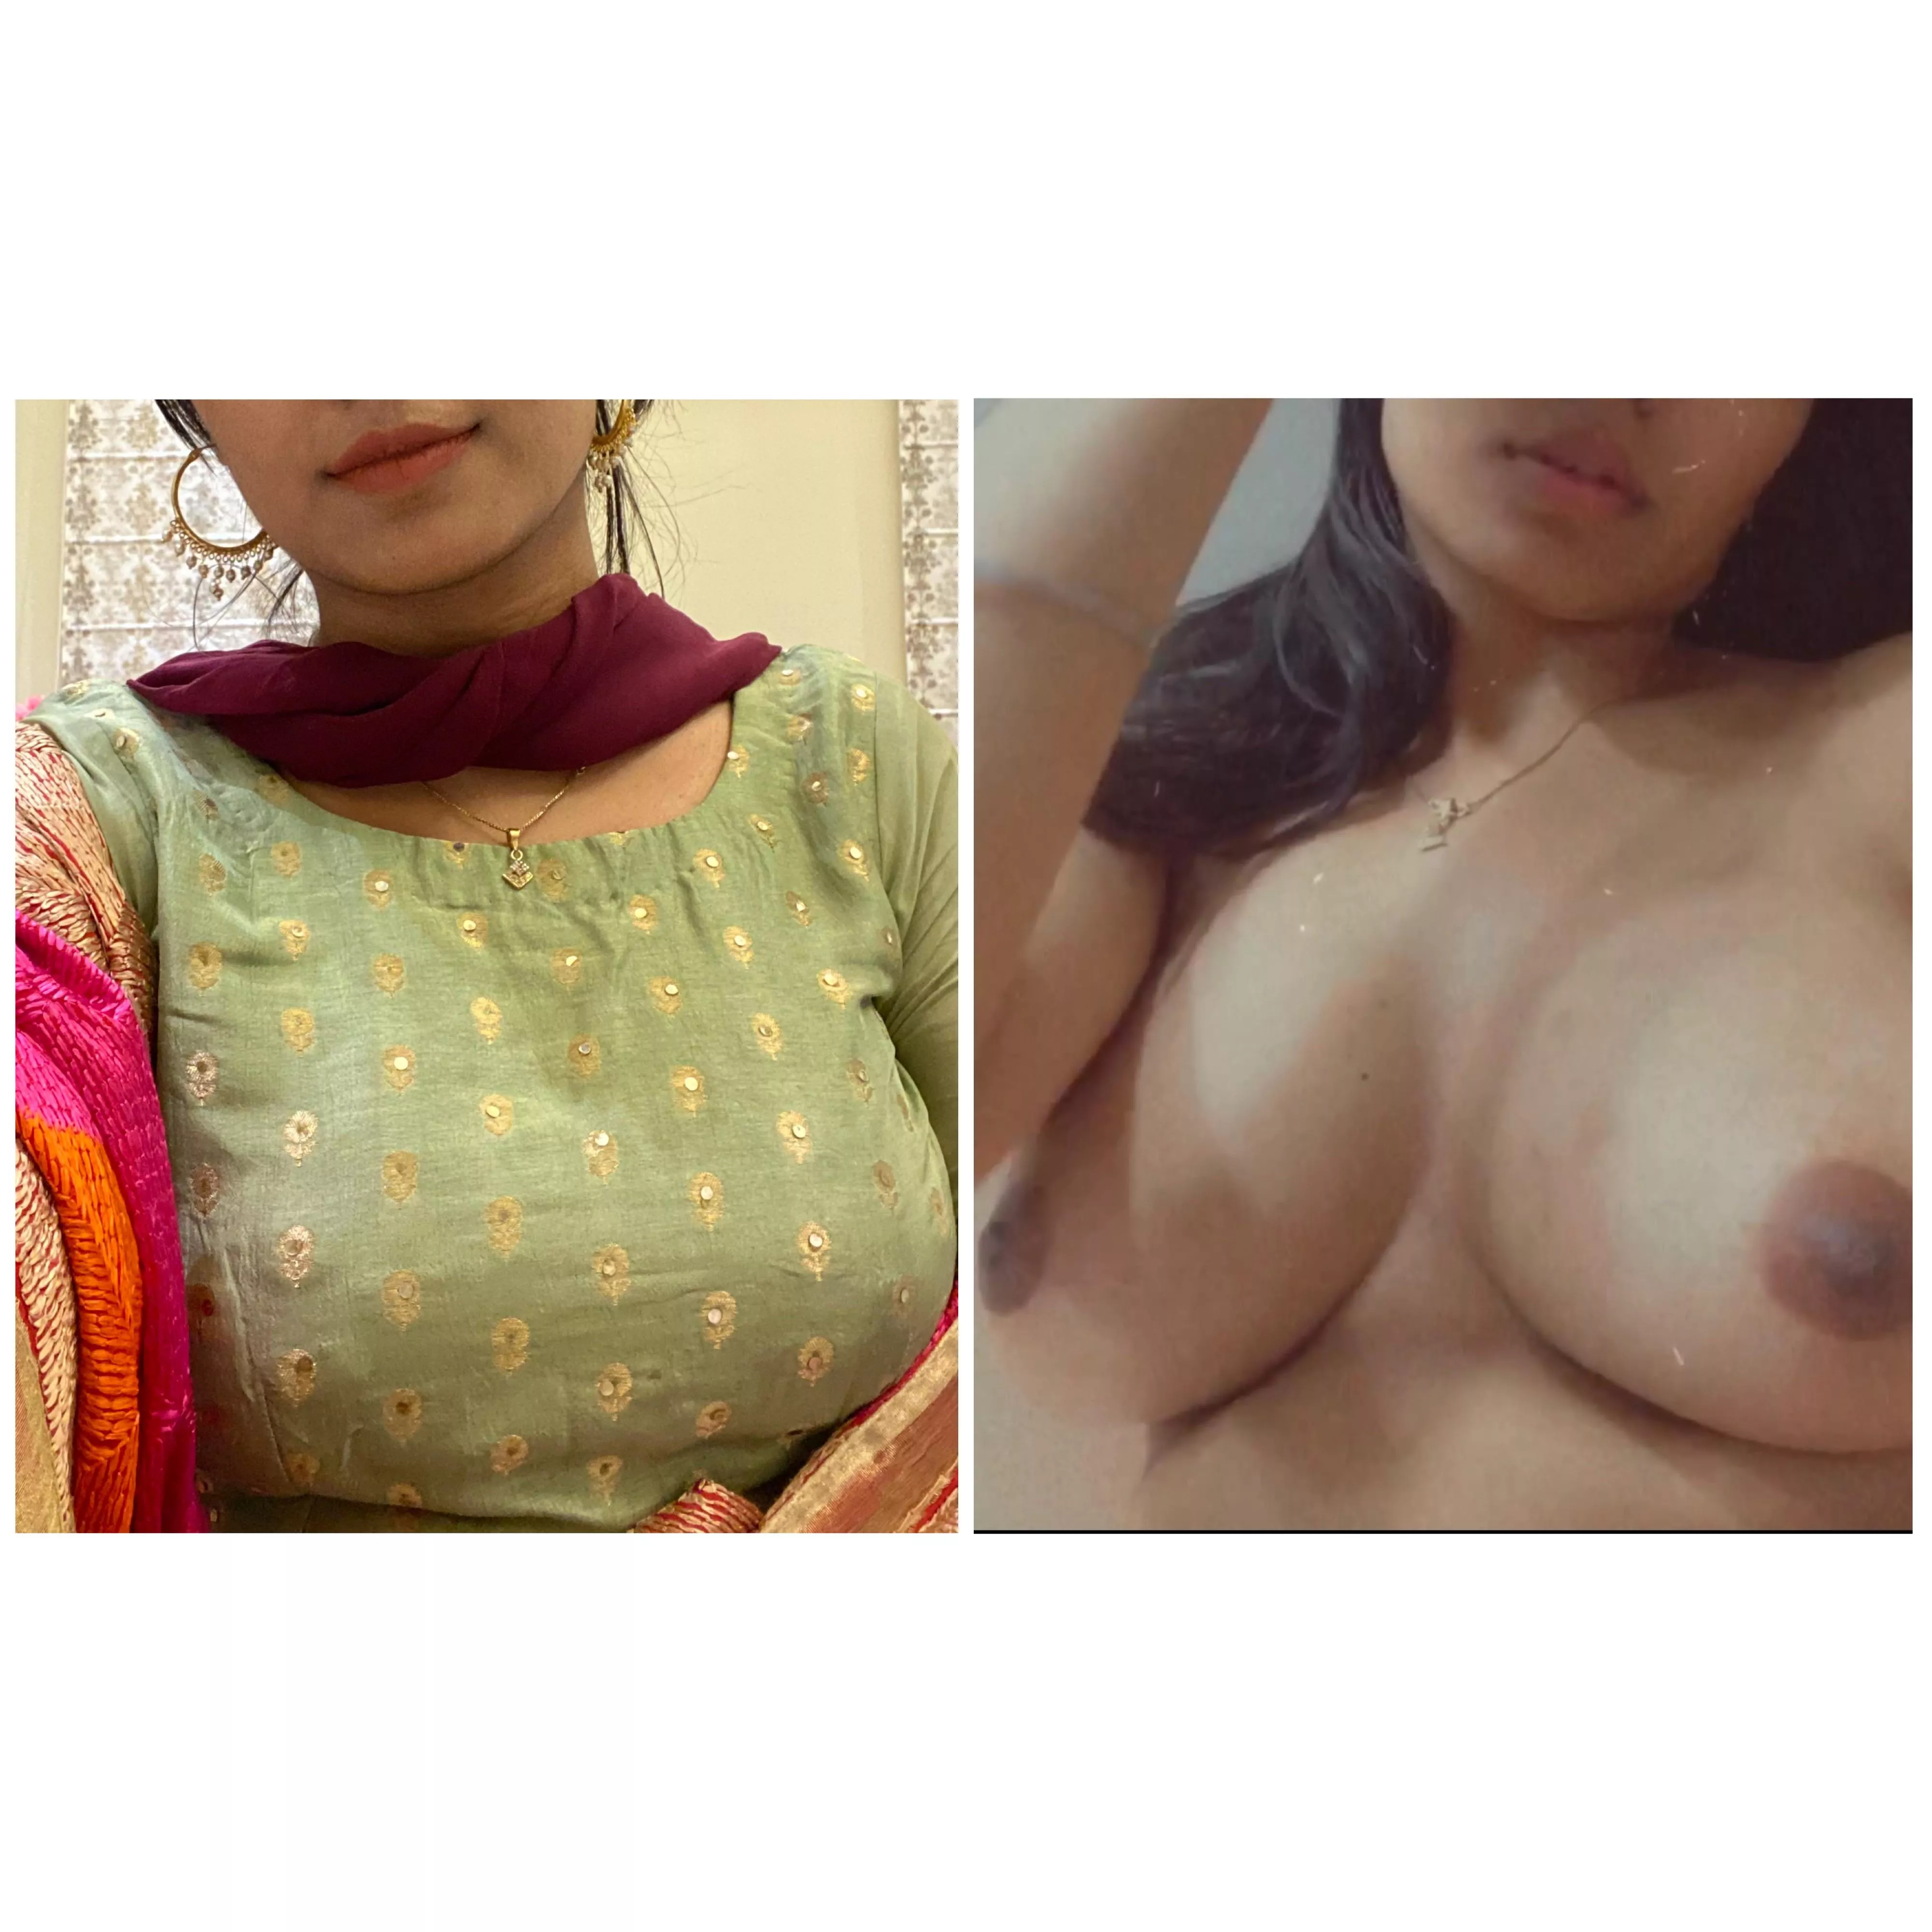 Panjabi girls nude photos - Quality porn